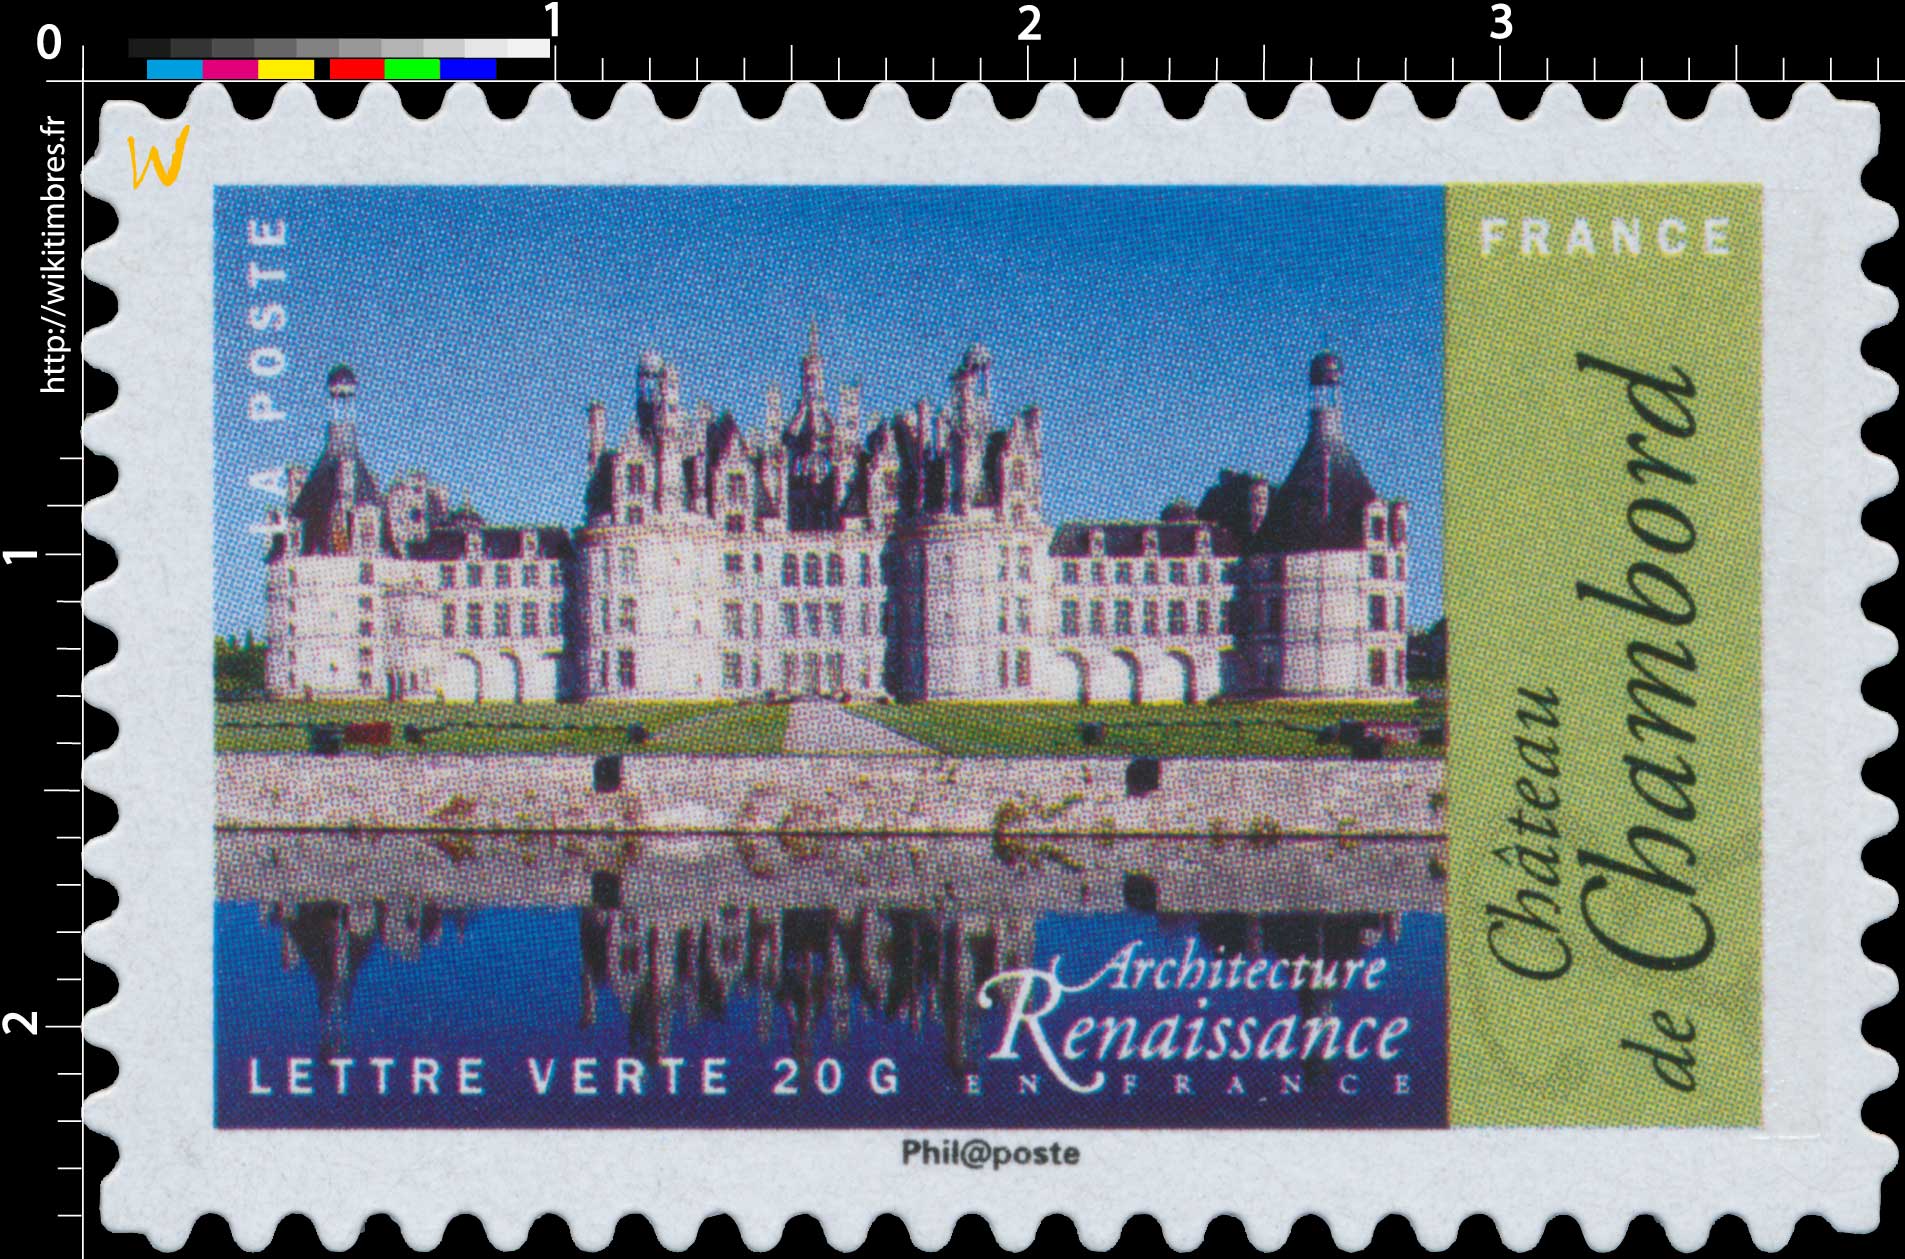 2015 Architecture Renaissance en France - Château de Chambord